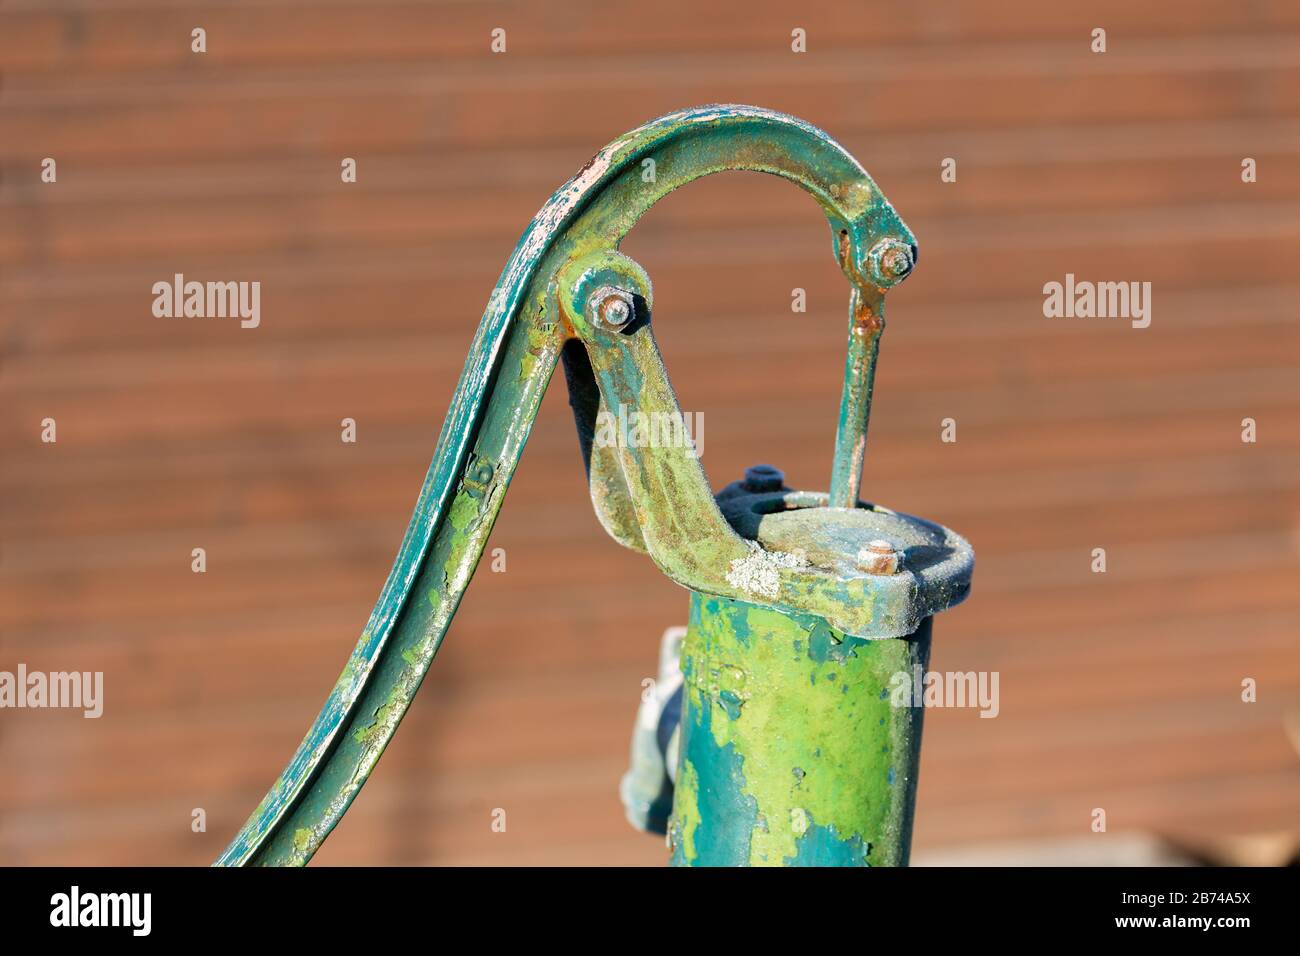 Bomba de agua a mano fotografías e imágenes de alta resolución - Alamy